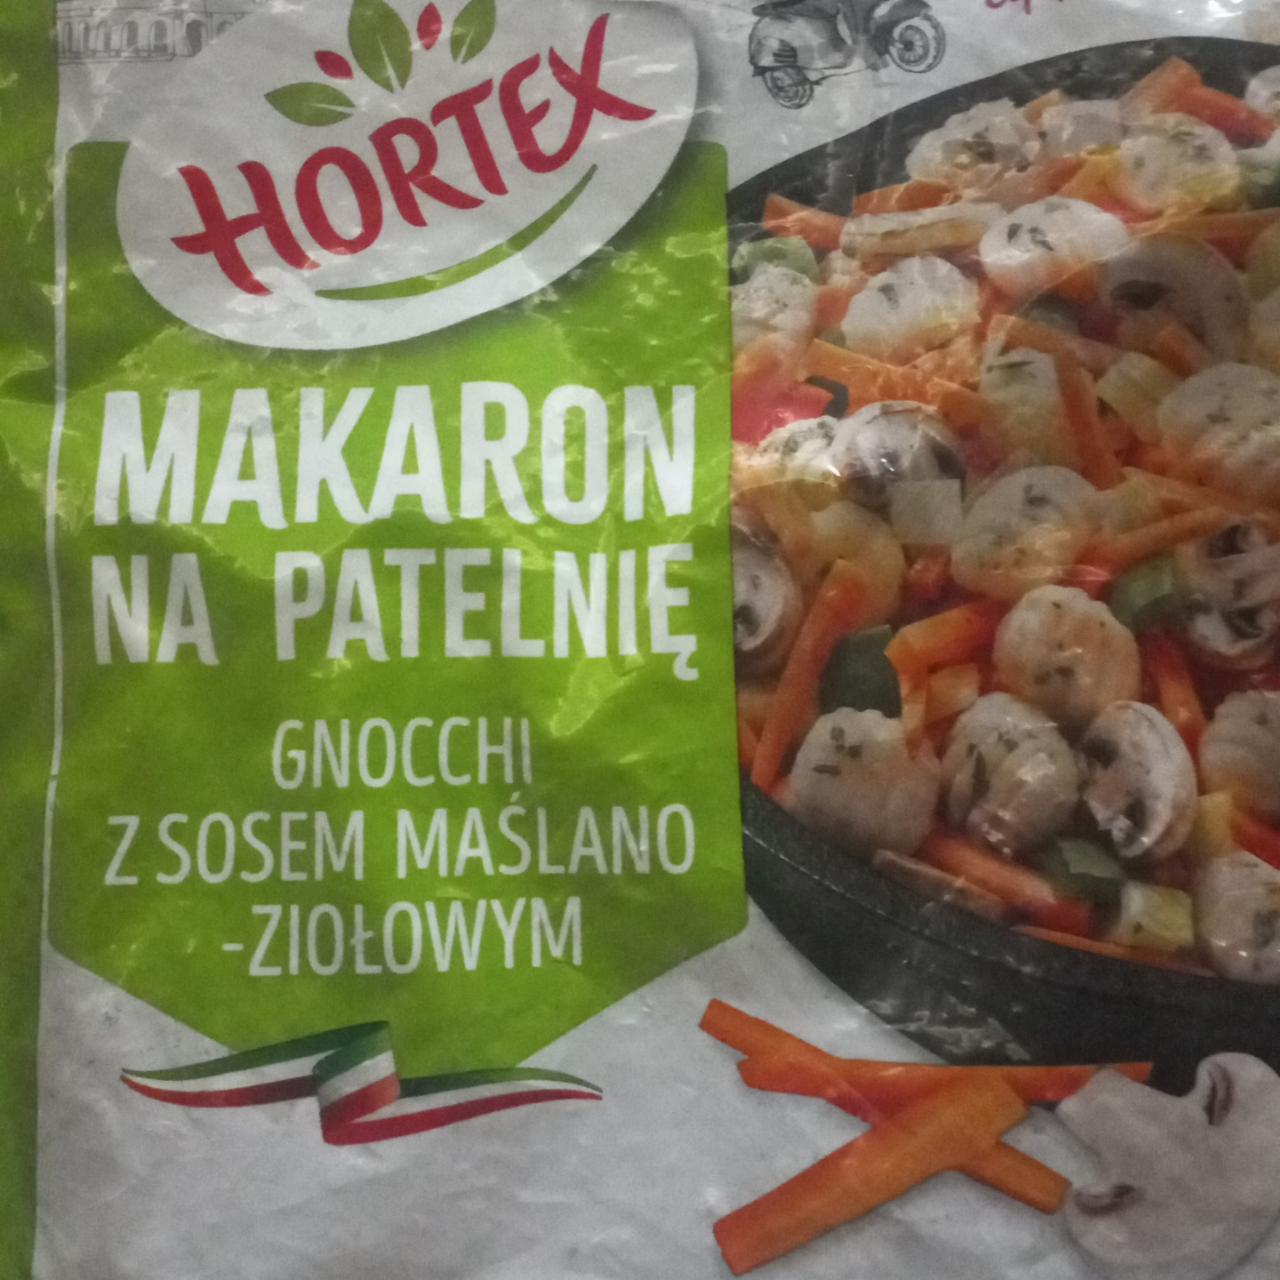 Fotografie - Makaron na patelnię gnocchi z sosem maślano-ziołowym Hortex